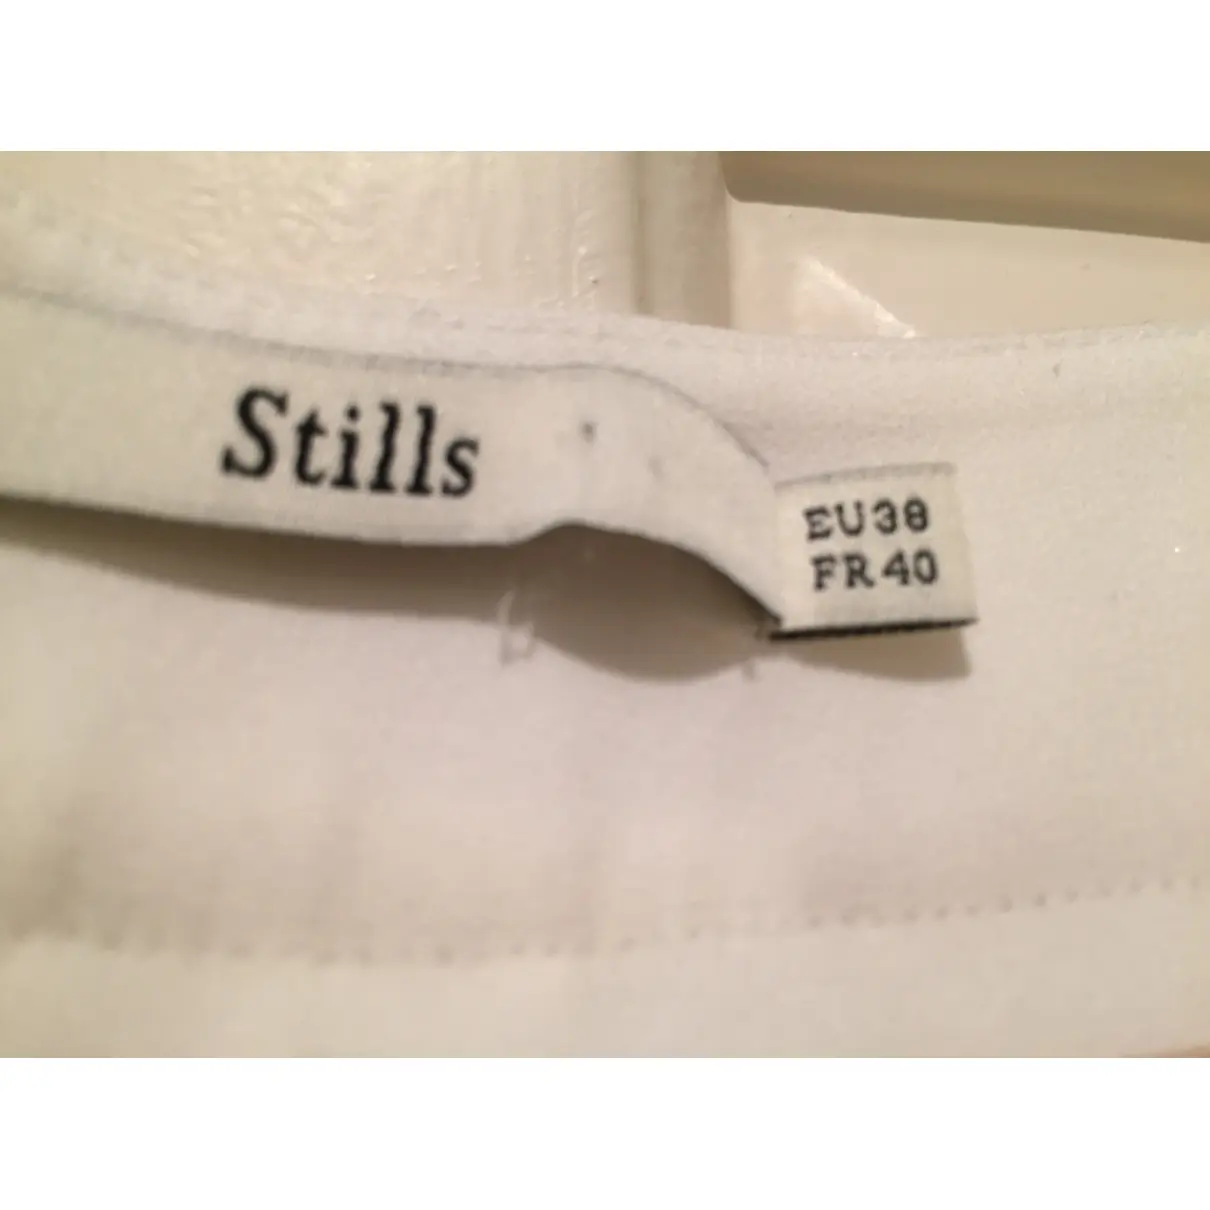 Buy Stills Atelier Trousers online